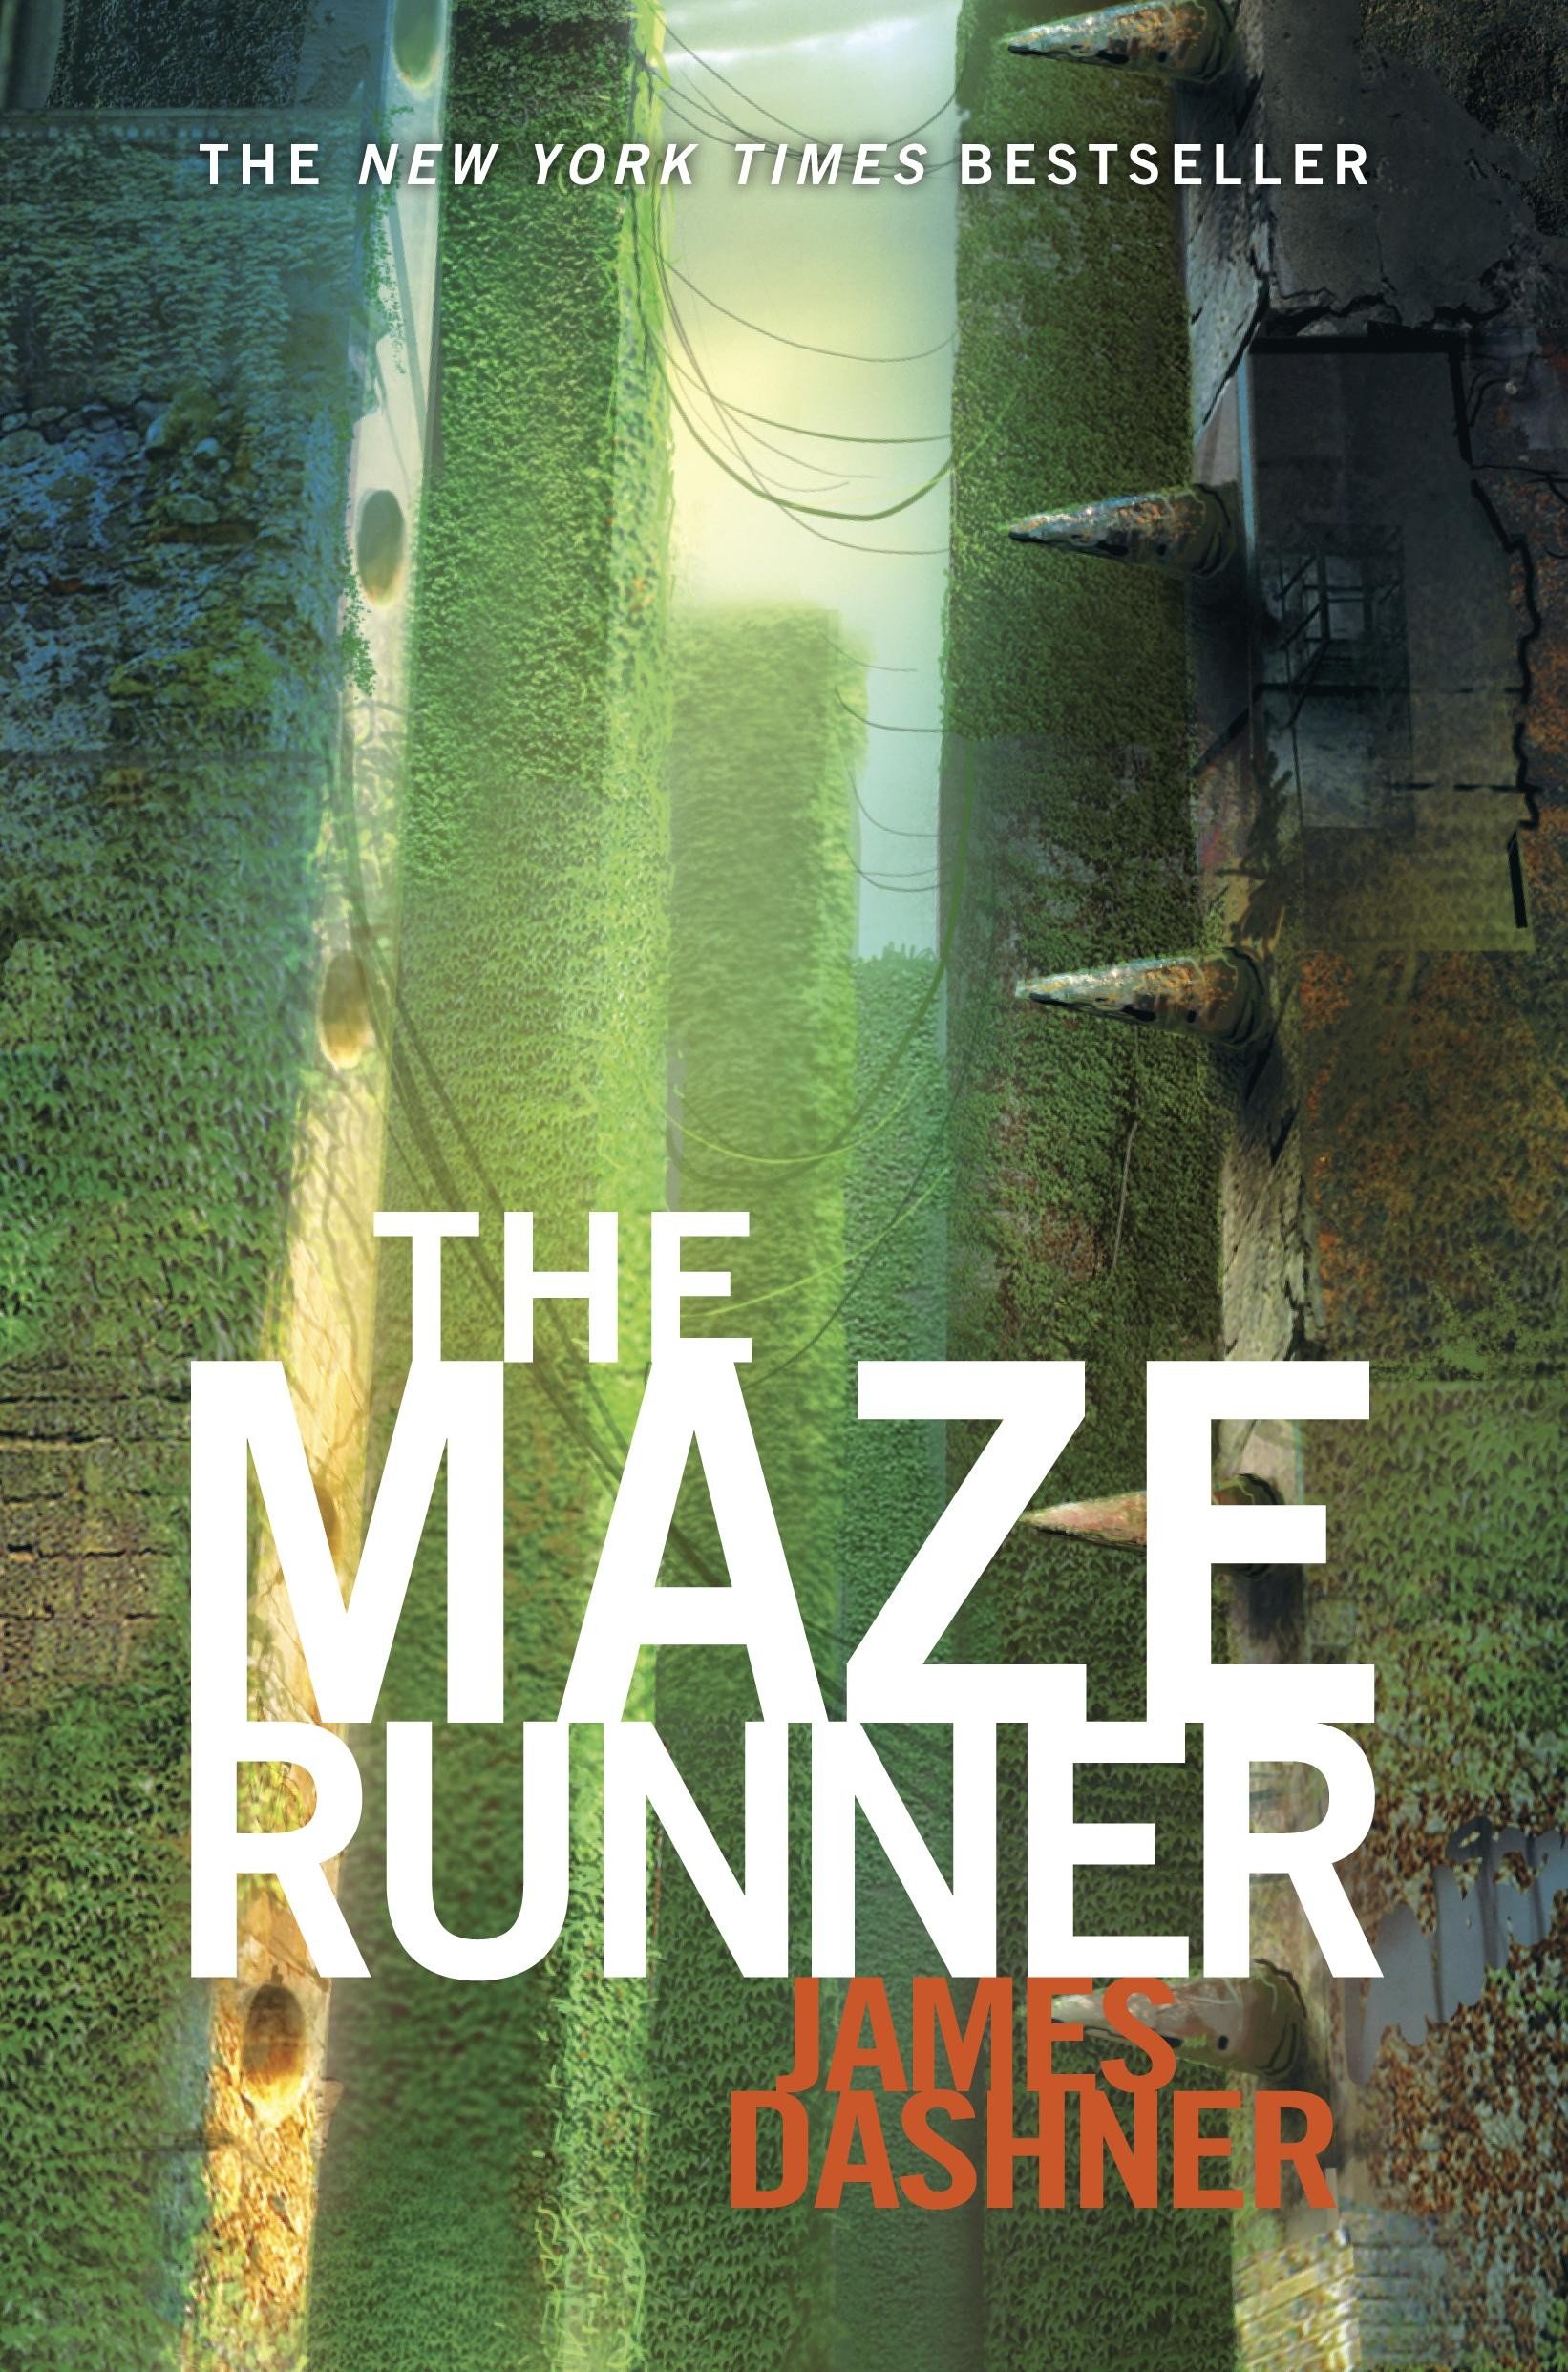 The Maze Runner, by James Dashner